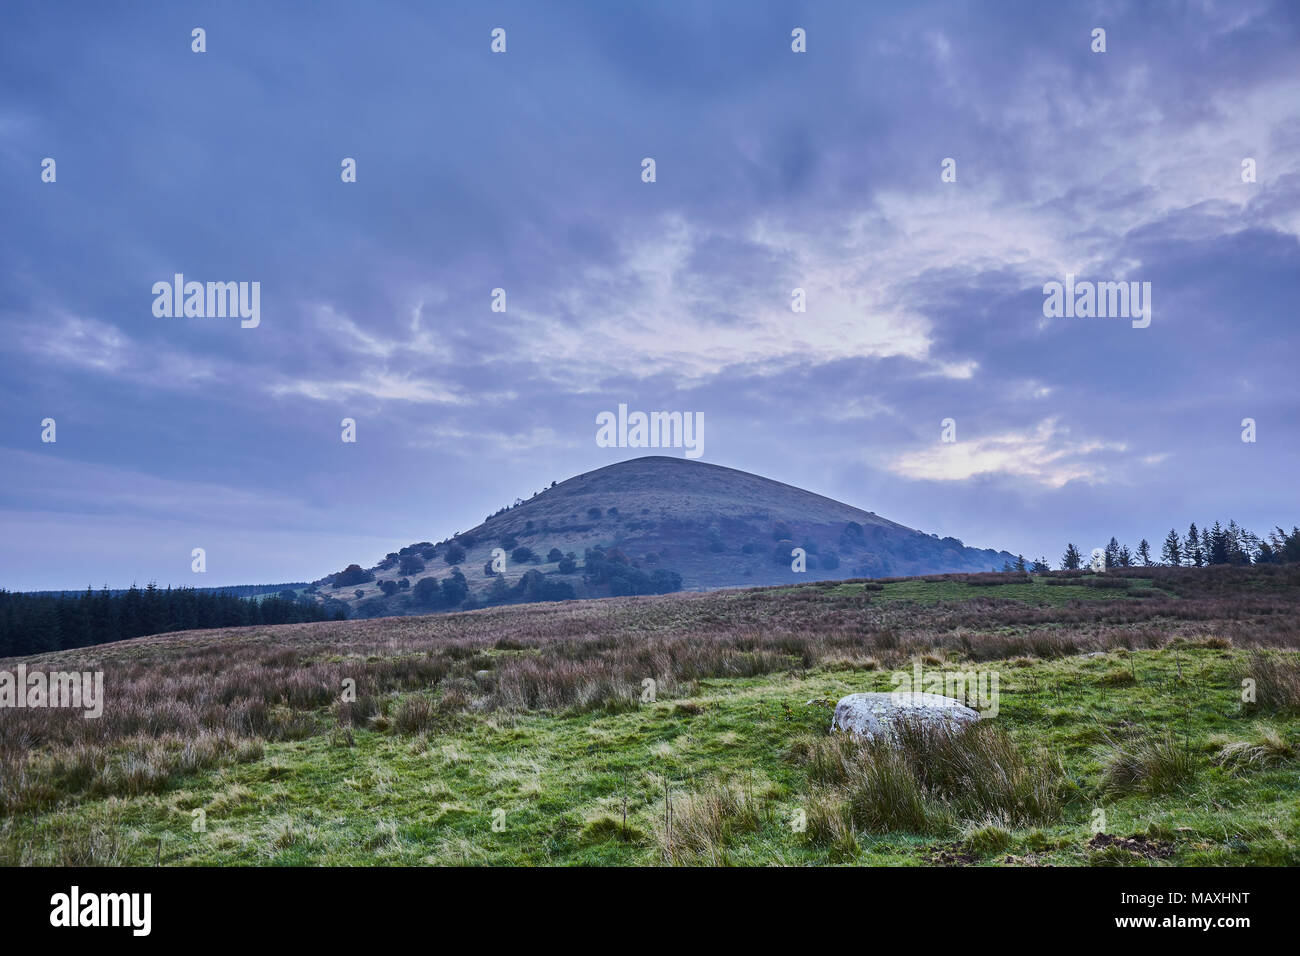 Grande Mell cadde in un inizio autunno mattina con nuvole temporalesche raccolta, Parco Nazionale del Distretto dei Laghi, Cumbria, Regno Unito Foto Stock